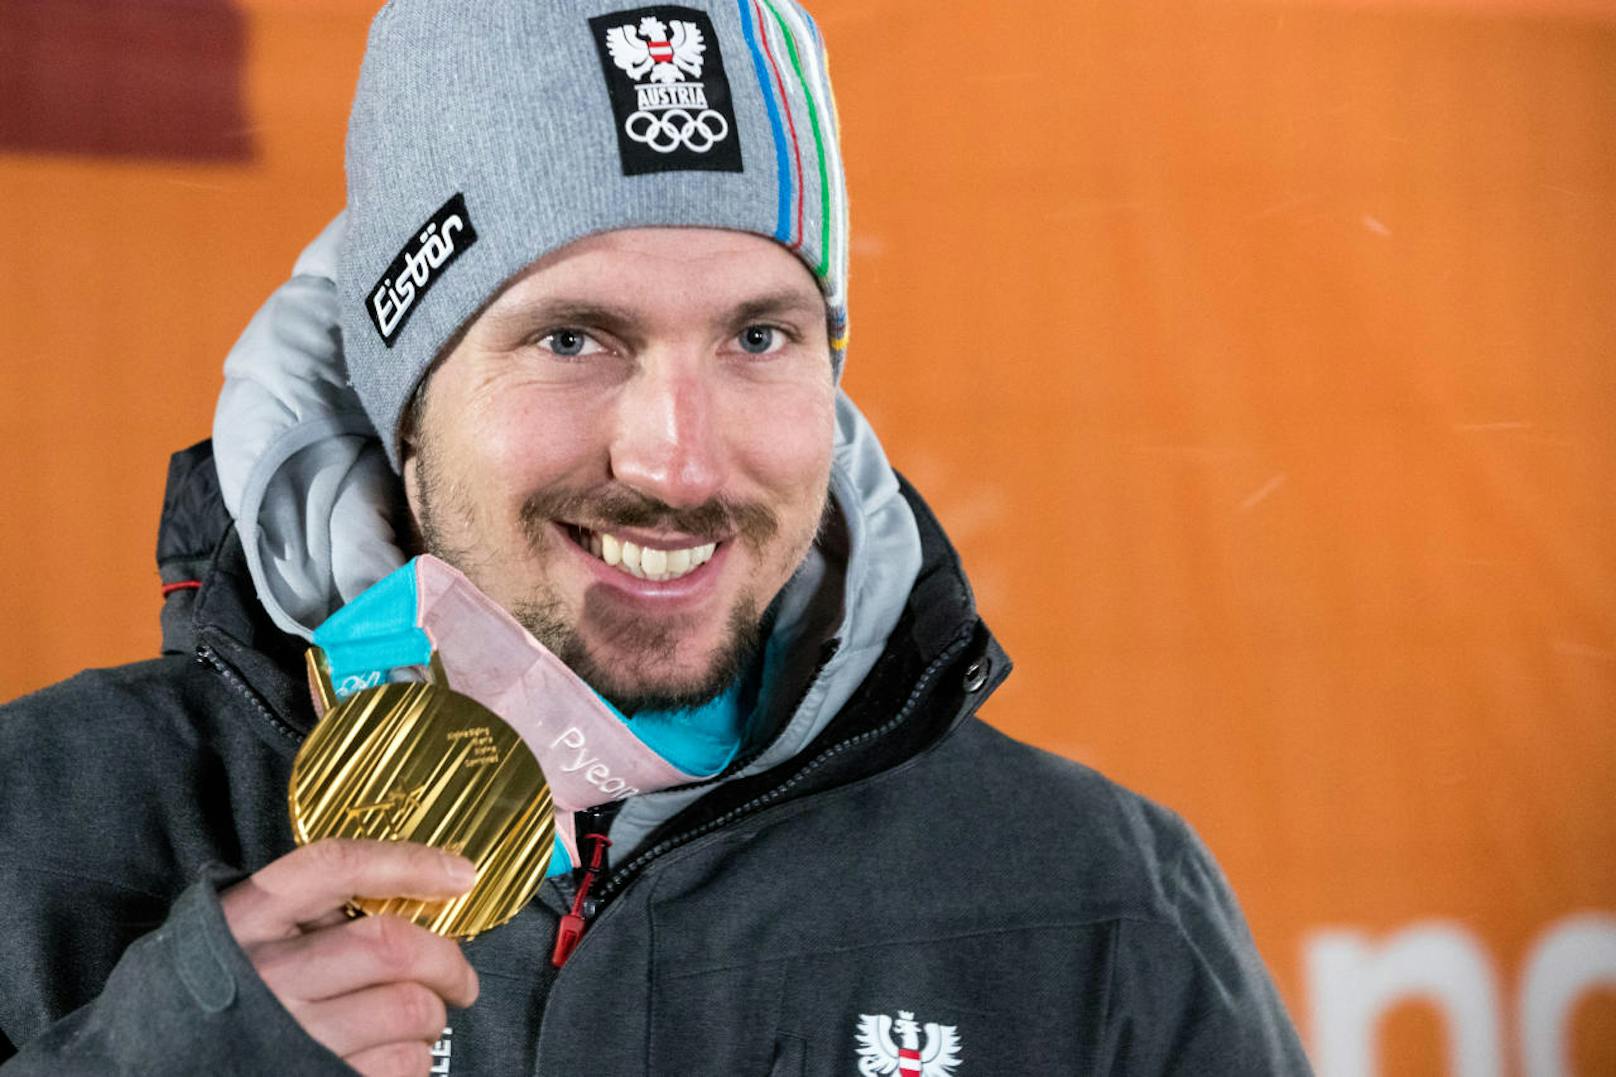 Marcel Hirscher ist am Ziel seiner Träume, krönt die Karriere mit dem ersten Olympia-Gold.